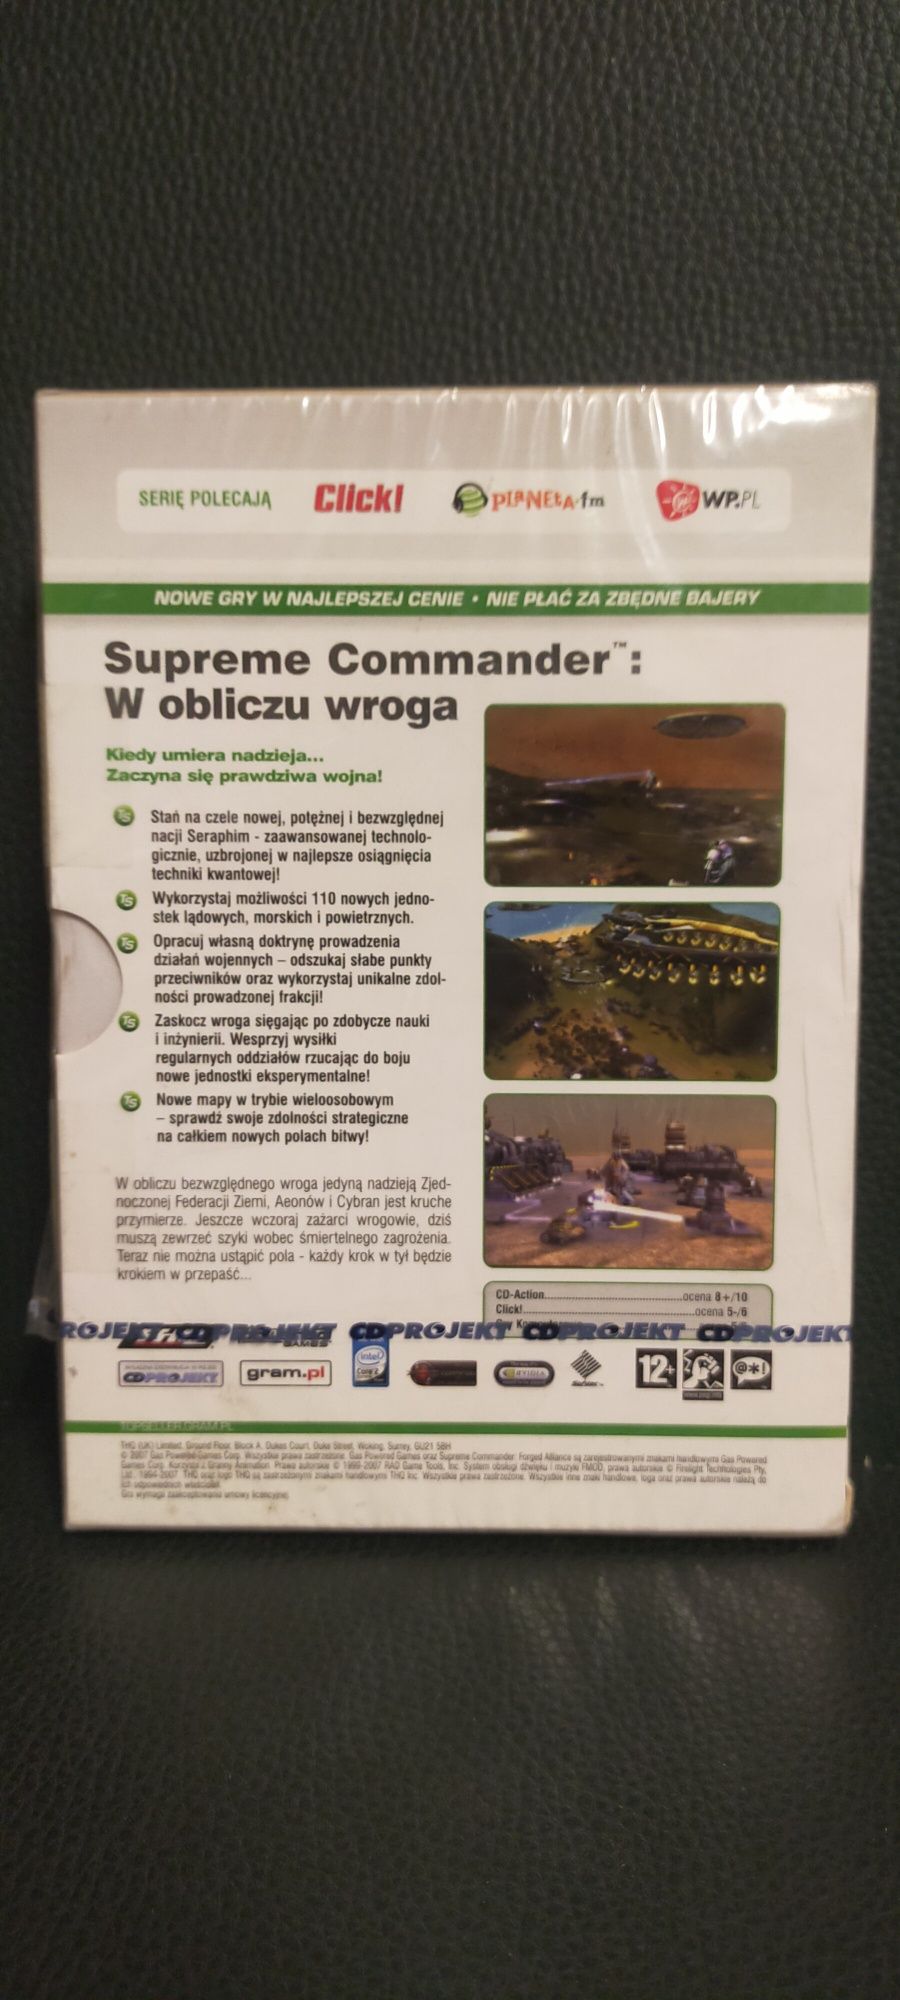 Gra Supreme Commander w obliczu wroga wersja kinowa pl